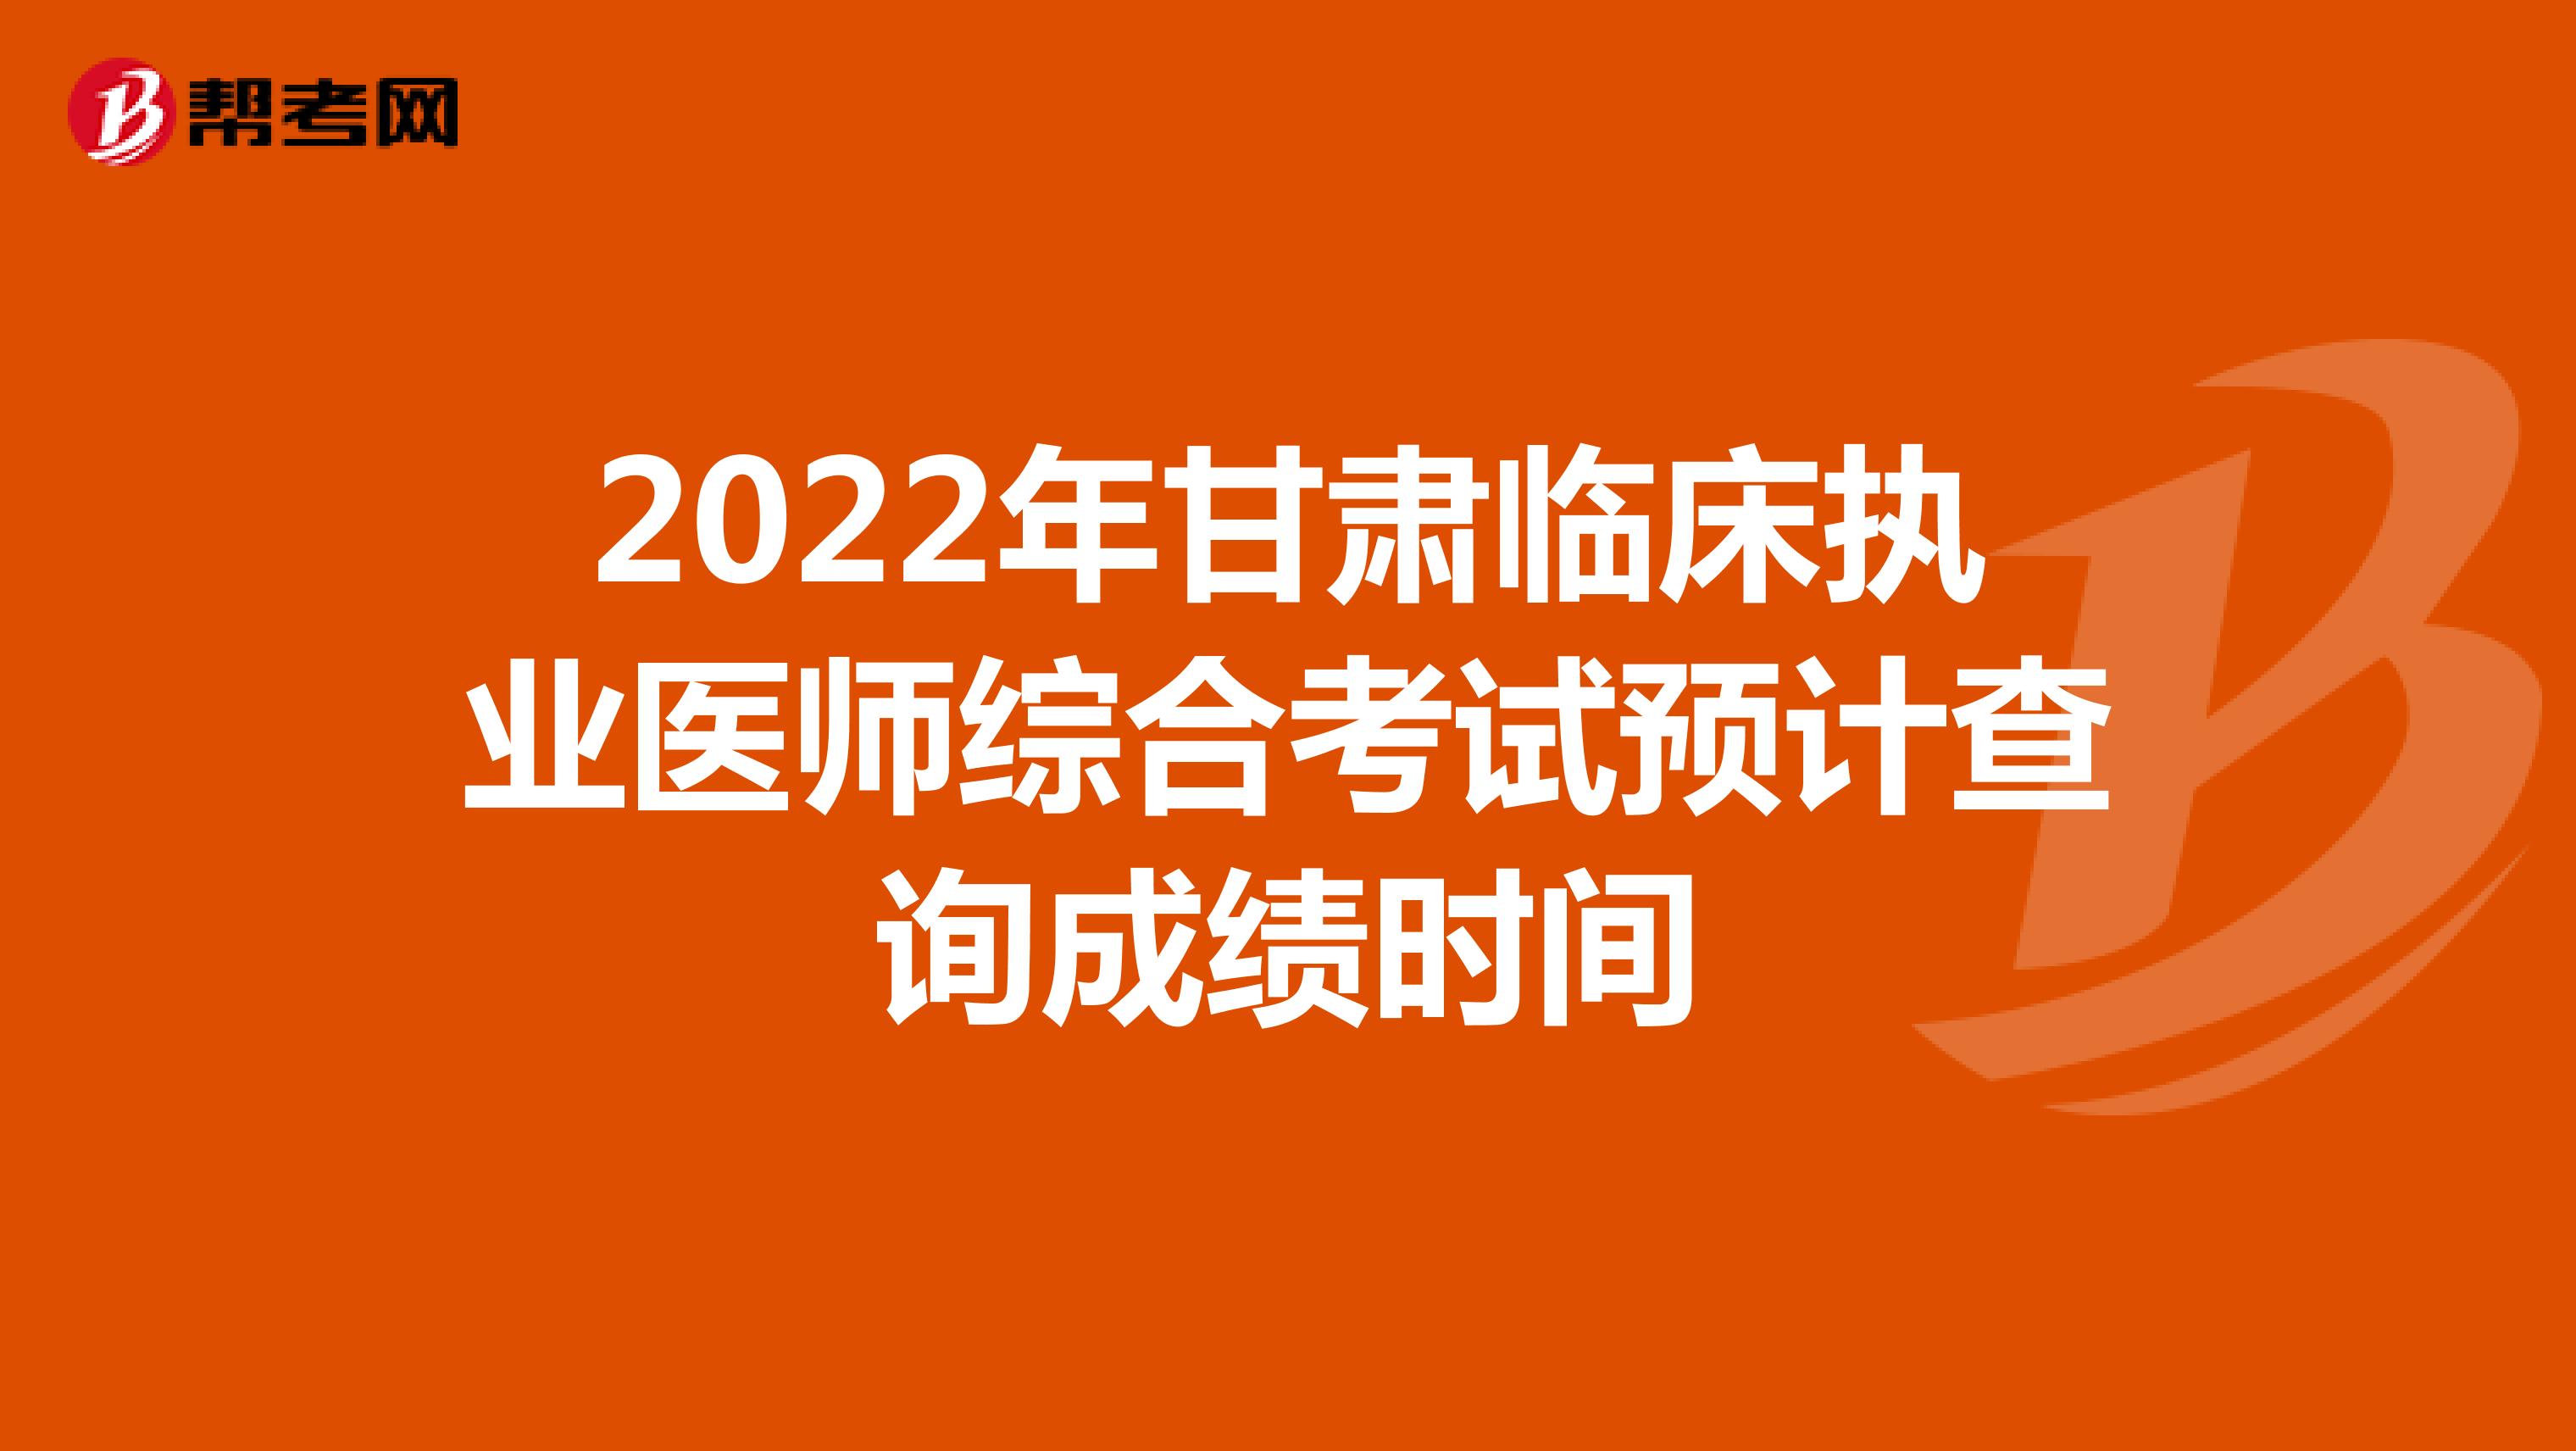 2022年甘肃临床执业医师综合考试预计查询成绩时间